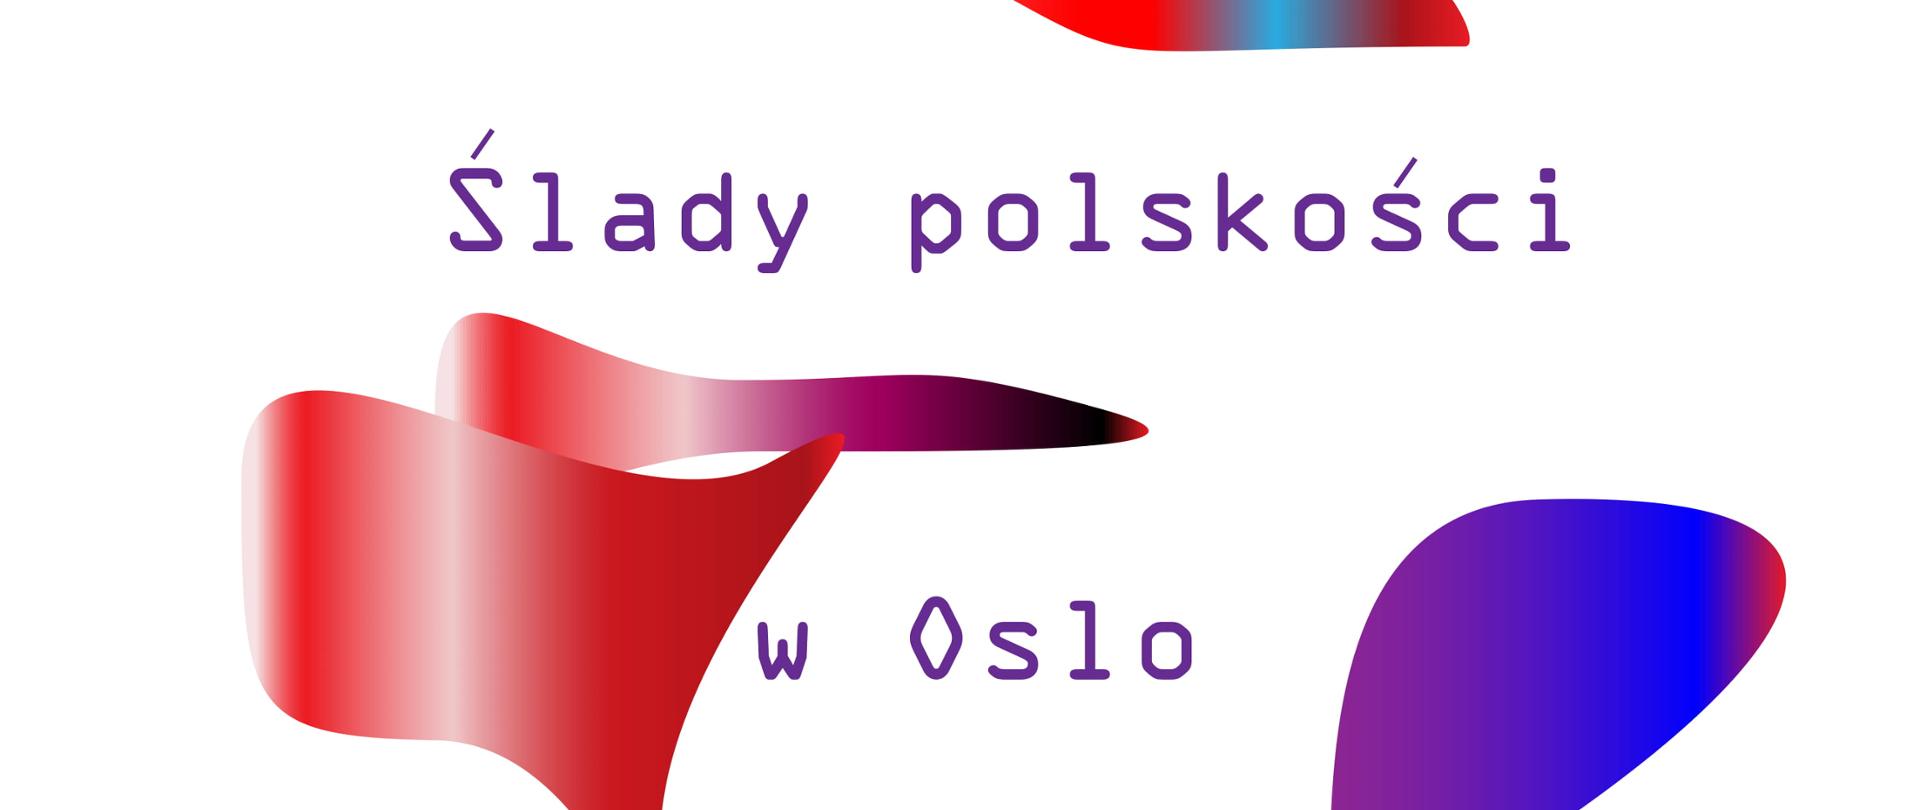 Ślady polskości w Oslo, konkurs